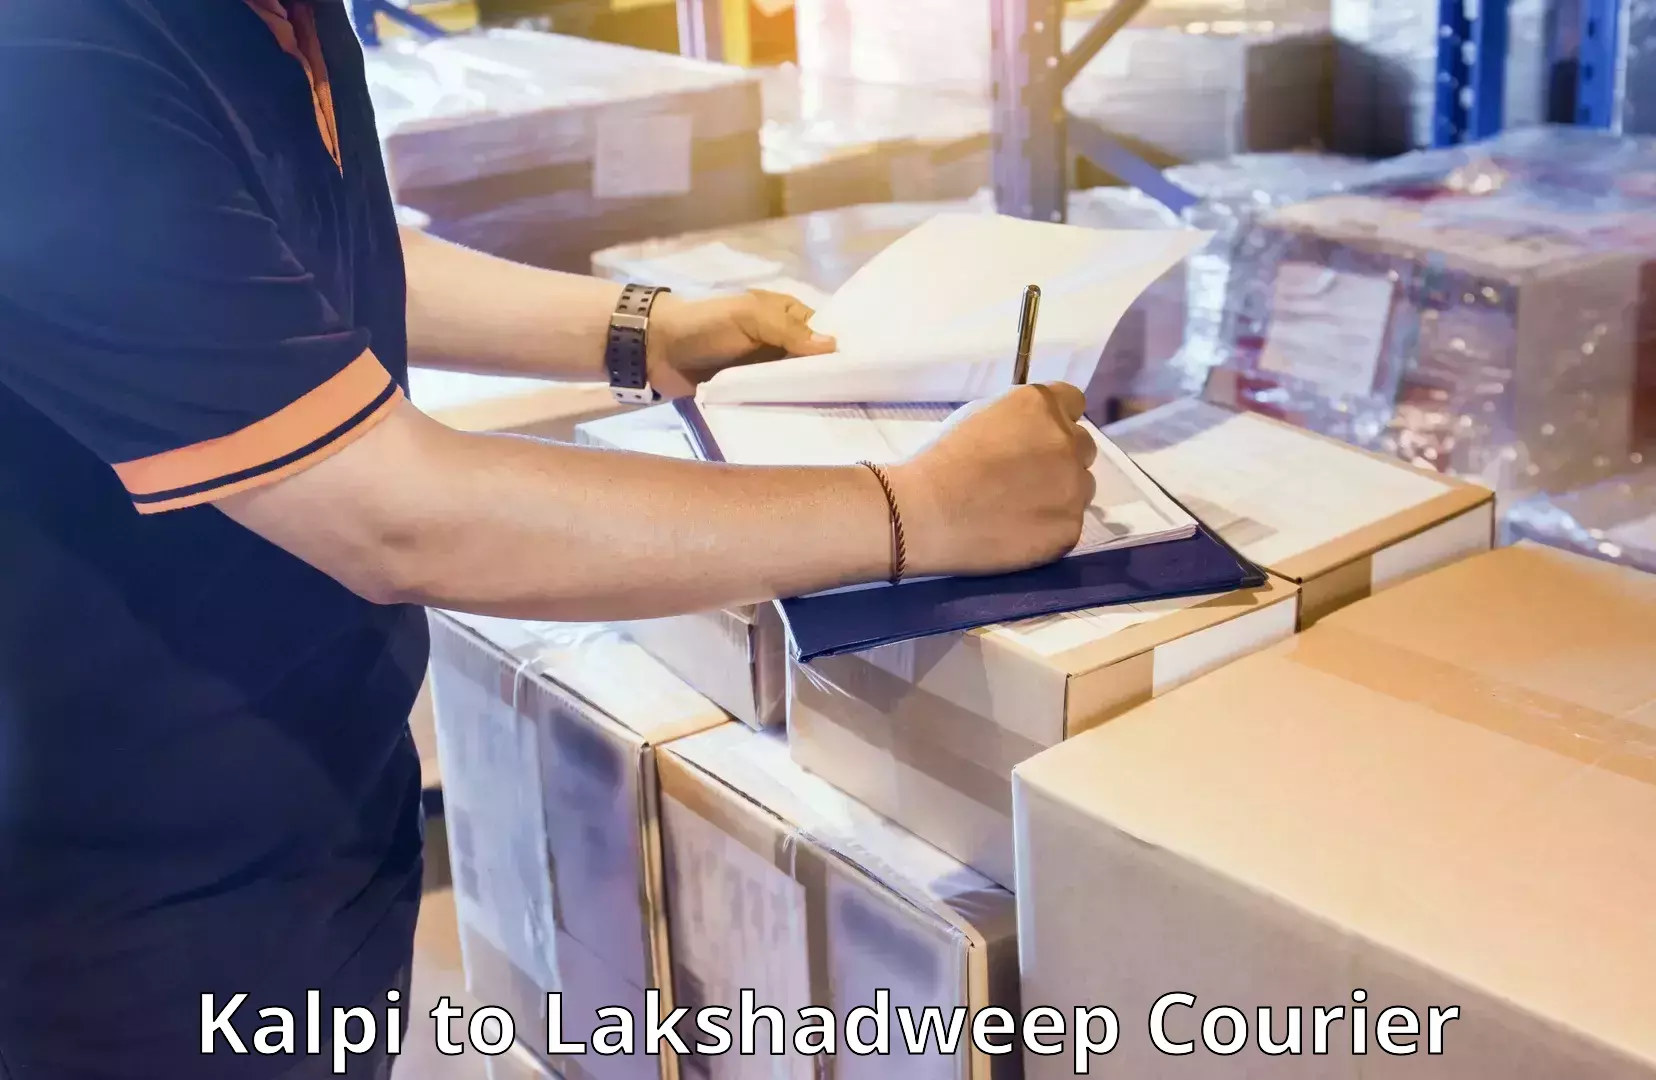 Luggage transport company Kalpi to Lakshadweep